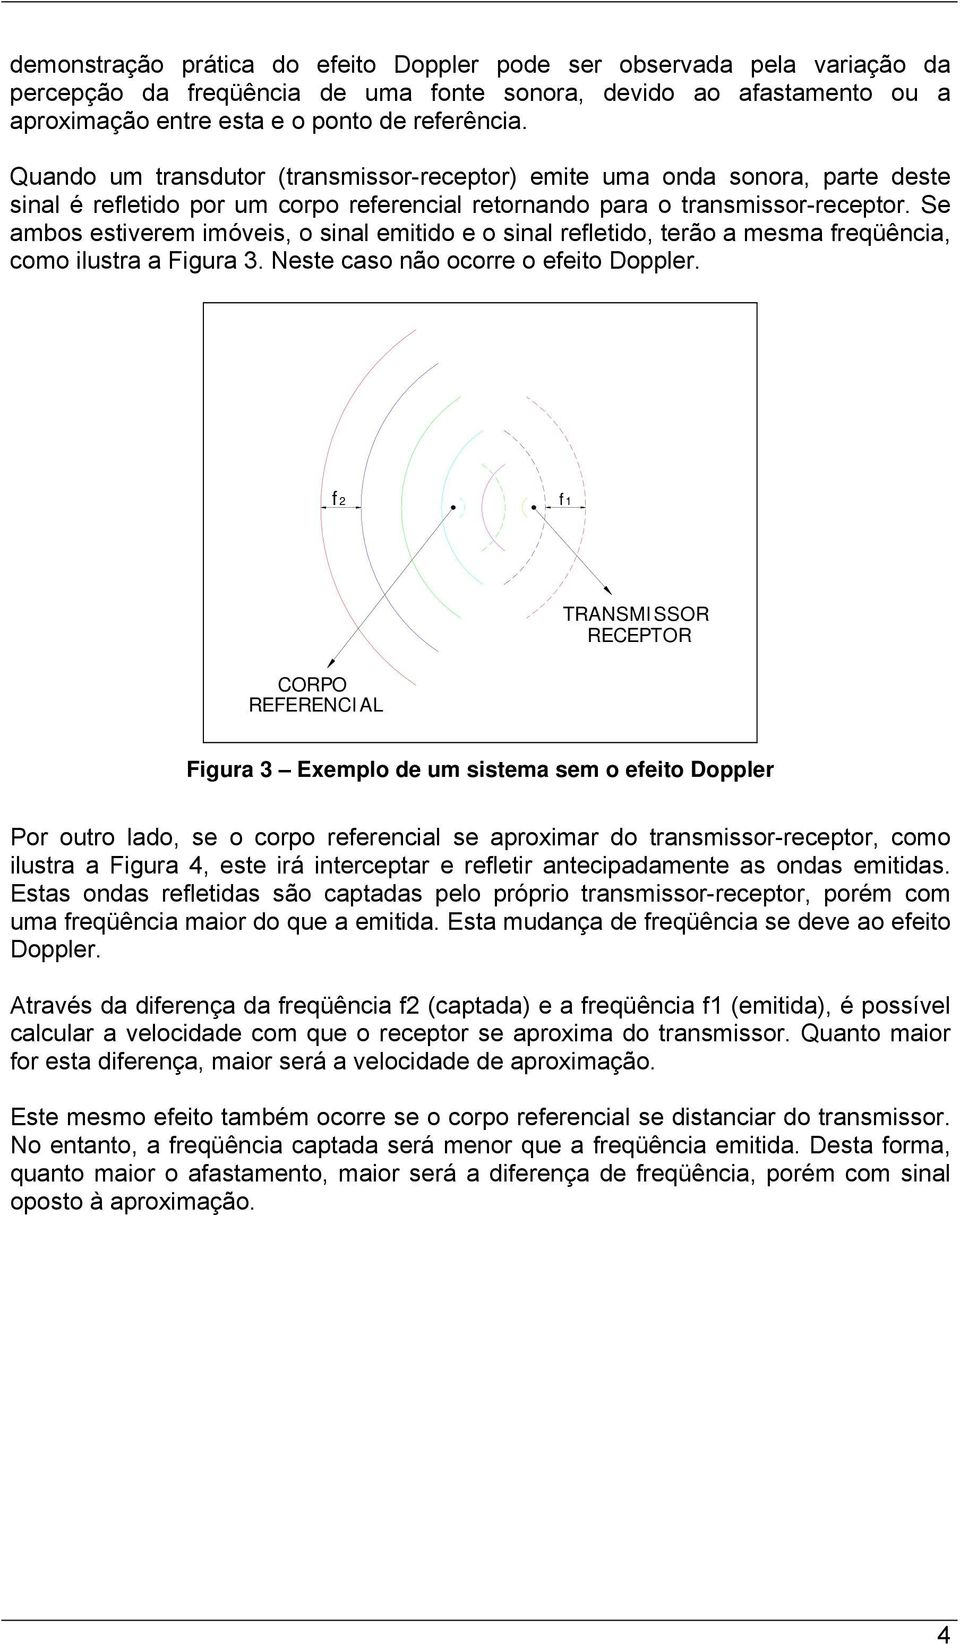 Se ambos estiverem imóveis, o sinal emitido e o sinal refletido, terão a mesma freqüência, como ilustra a Figura 3. Neste caso não ocorre o efeito Doppler.